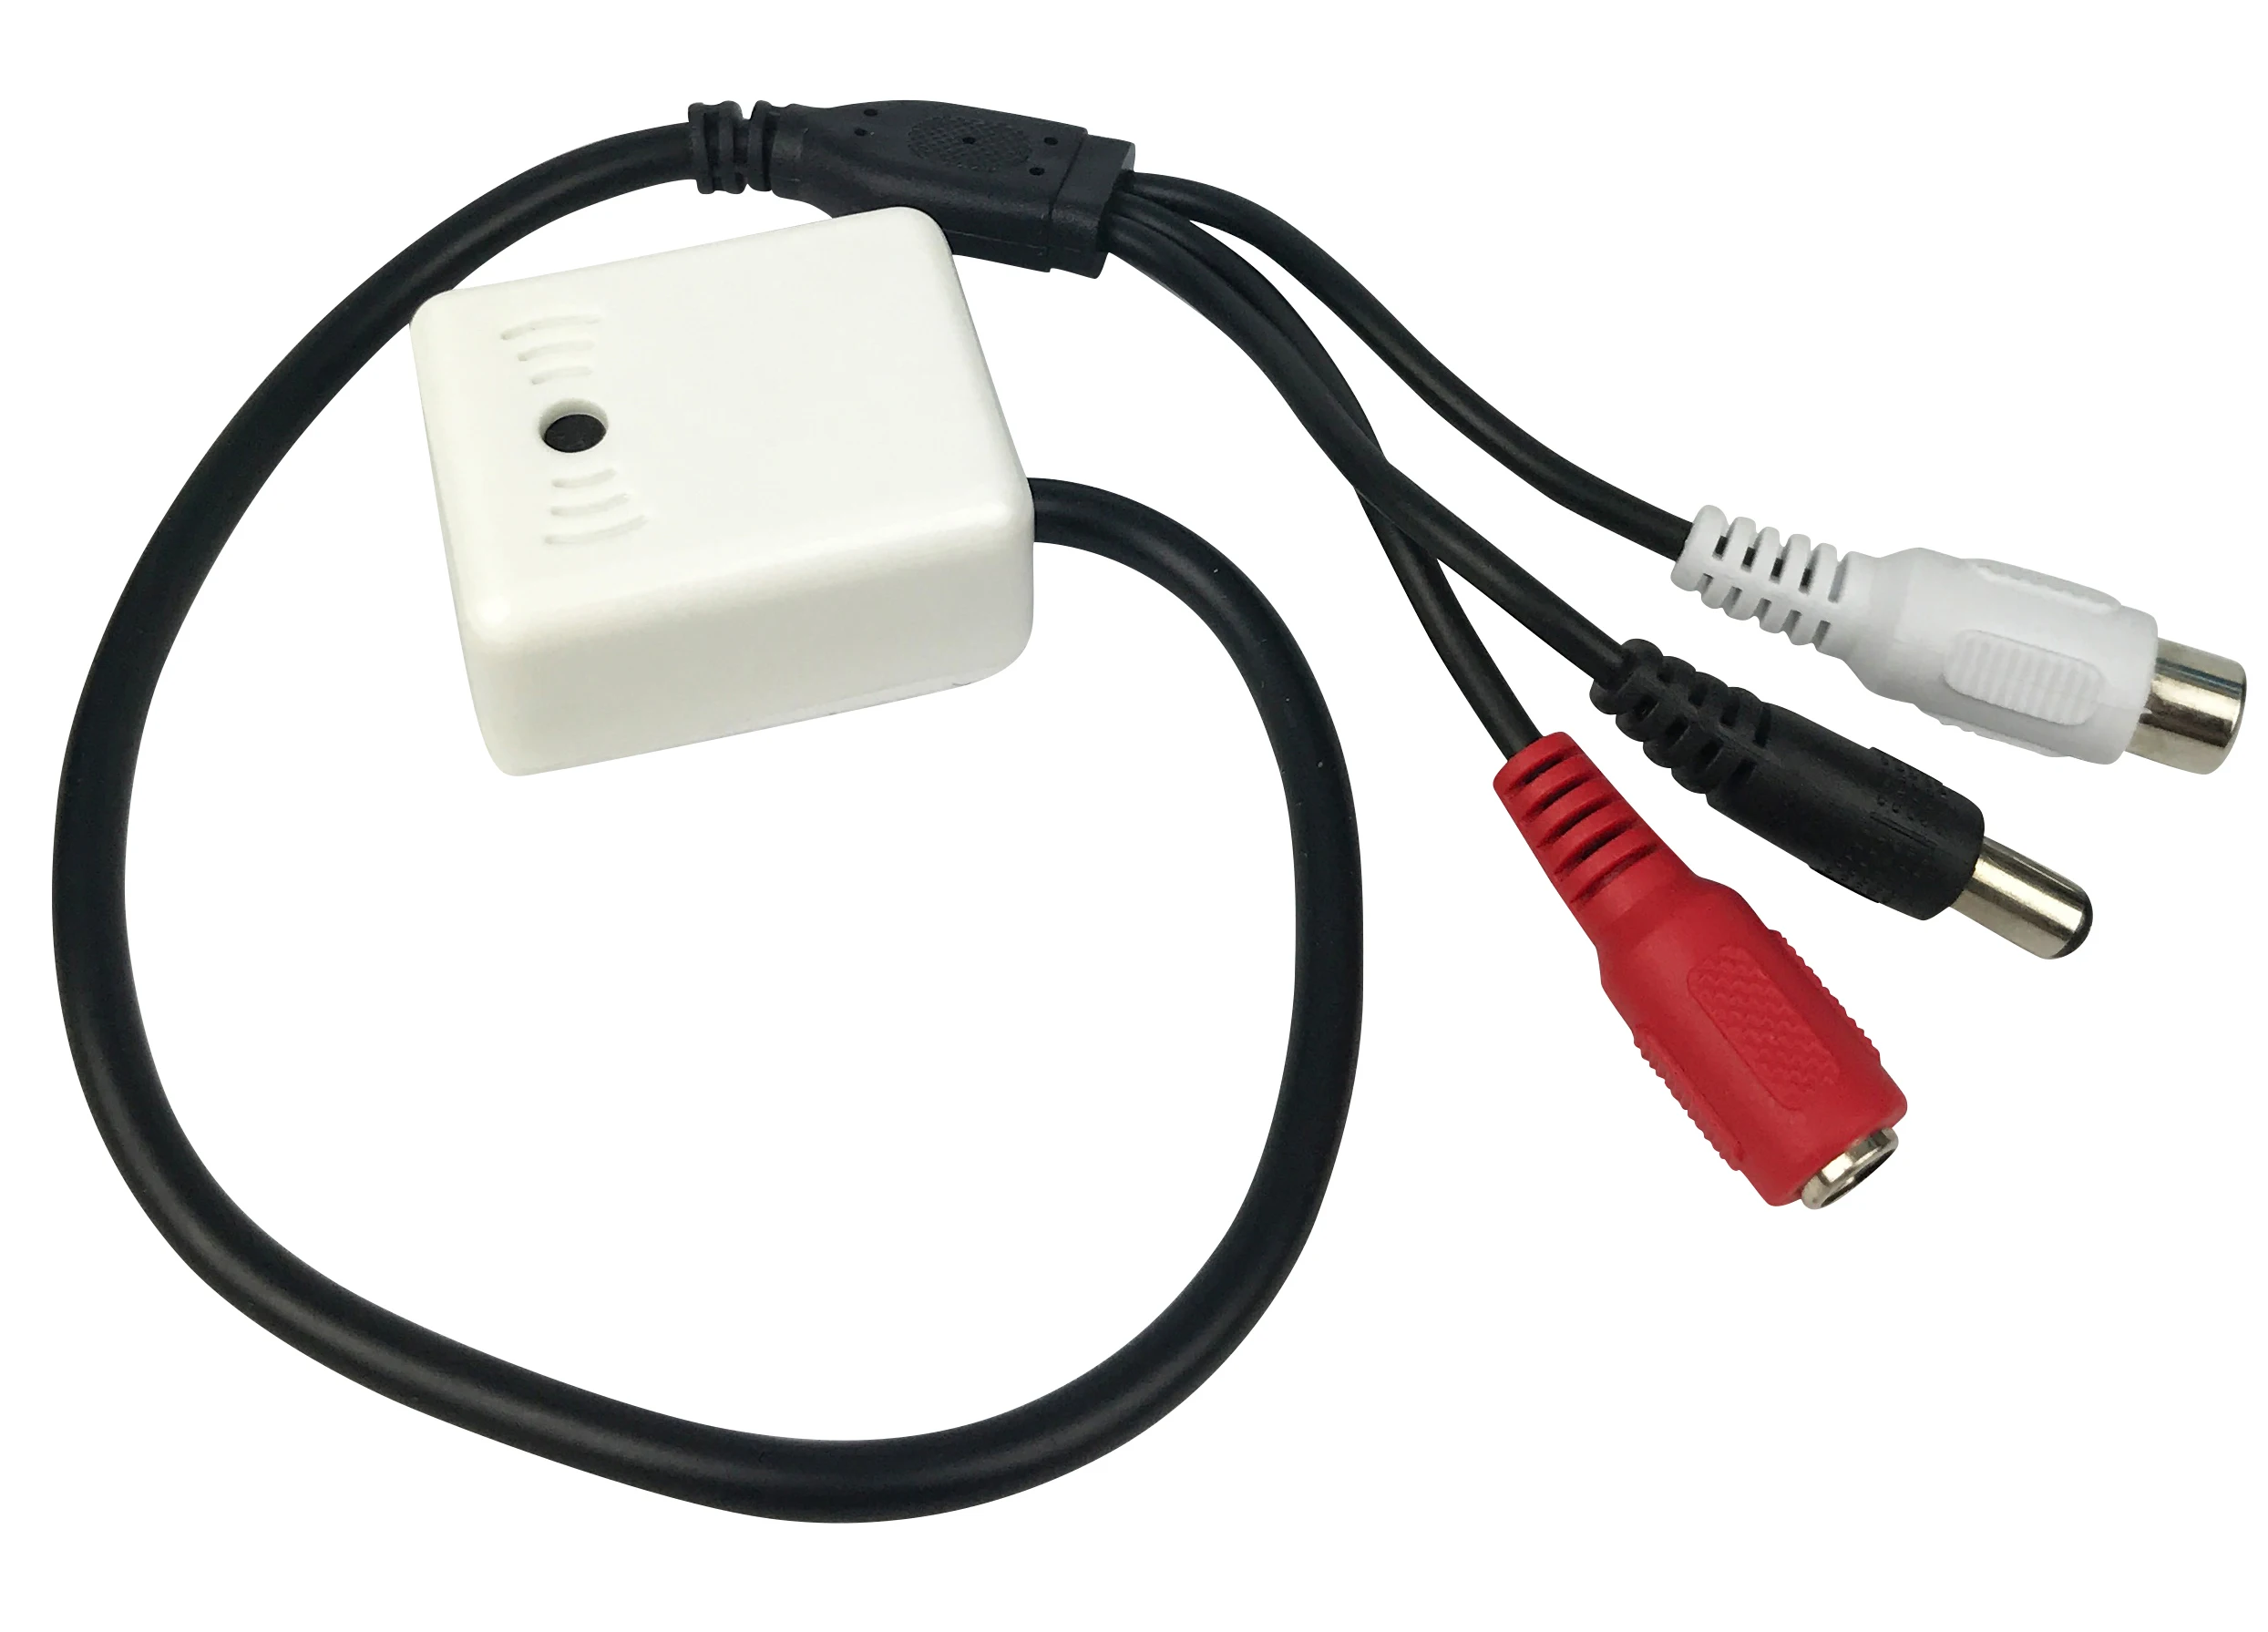 Uvusee мини микрофон Высокочувствительный усилитель звука микрофон для внутреннего видеонаблюдения камера системы безопасности цифровой видеорегистратор системы